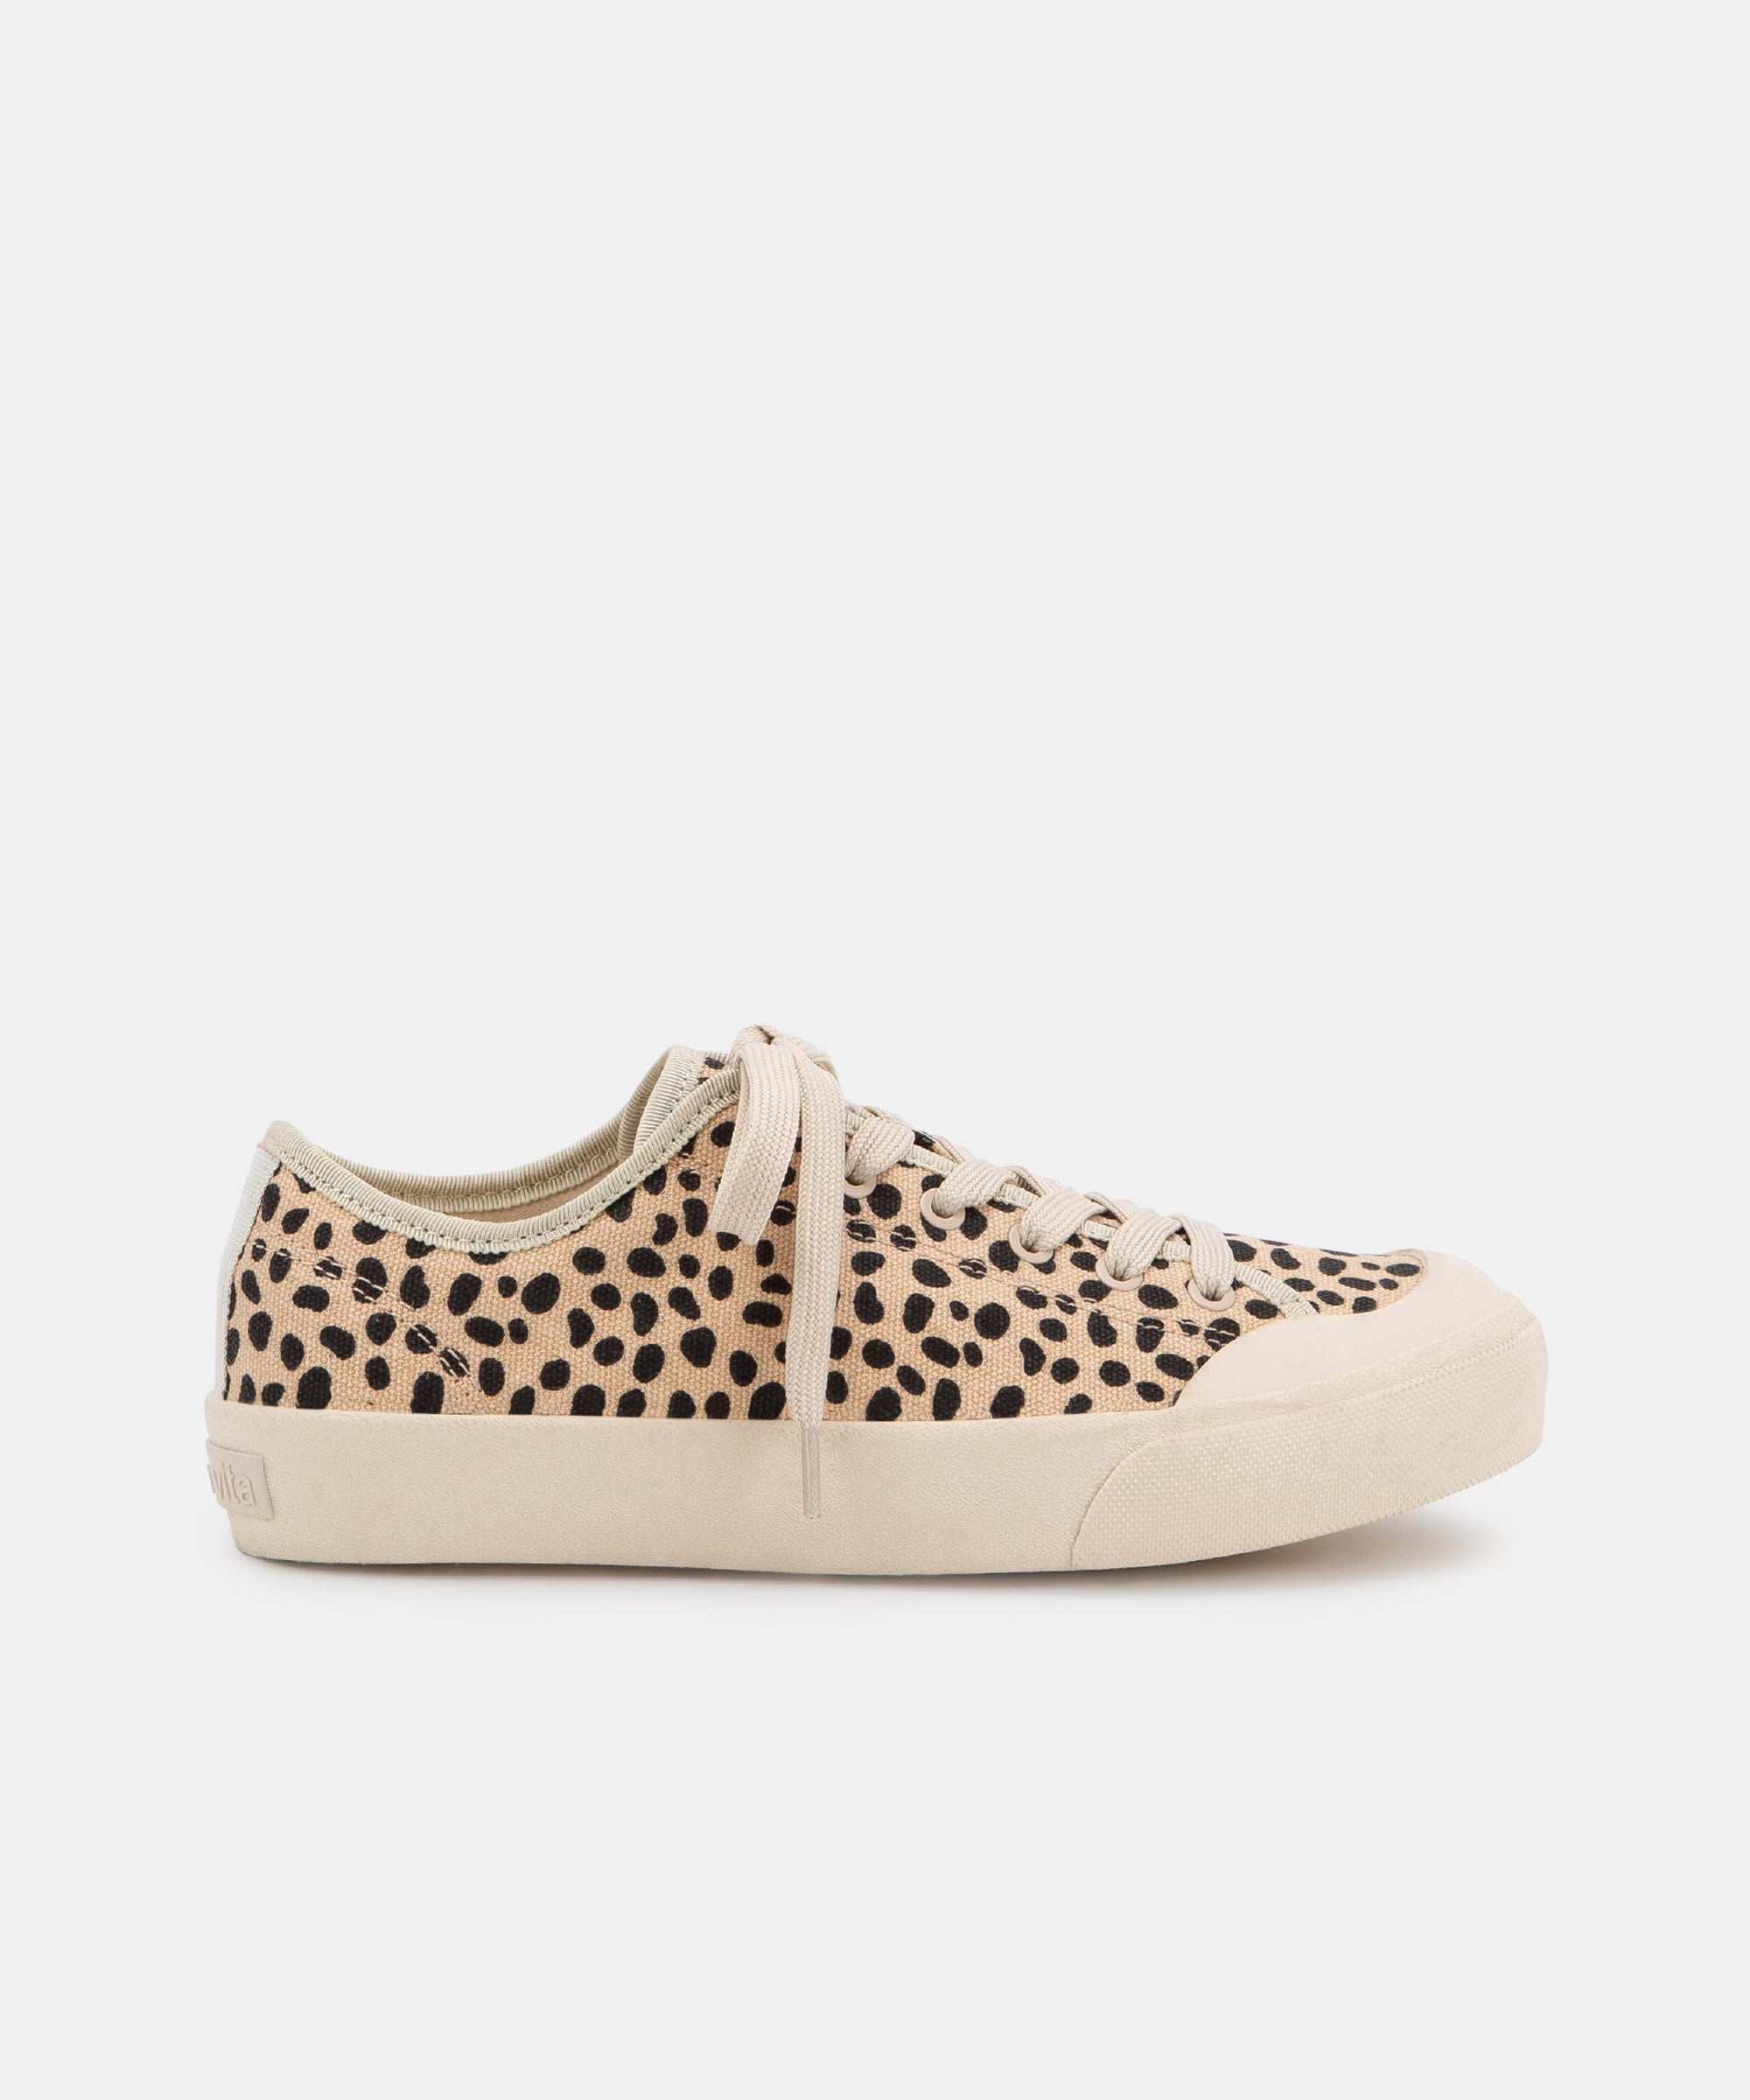 dolce vita cheetah sneakers